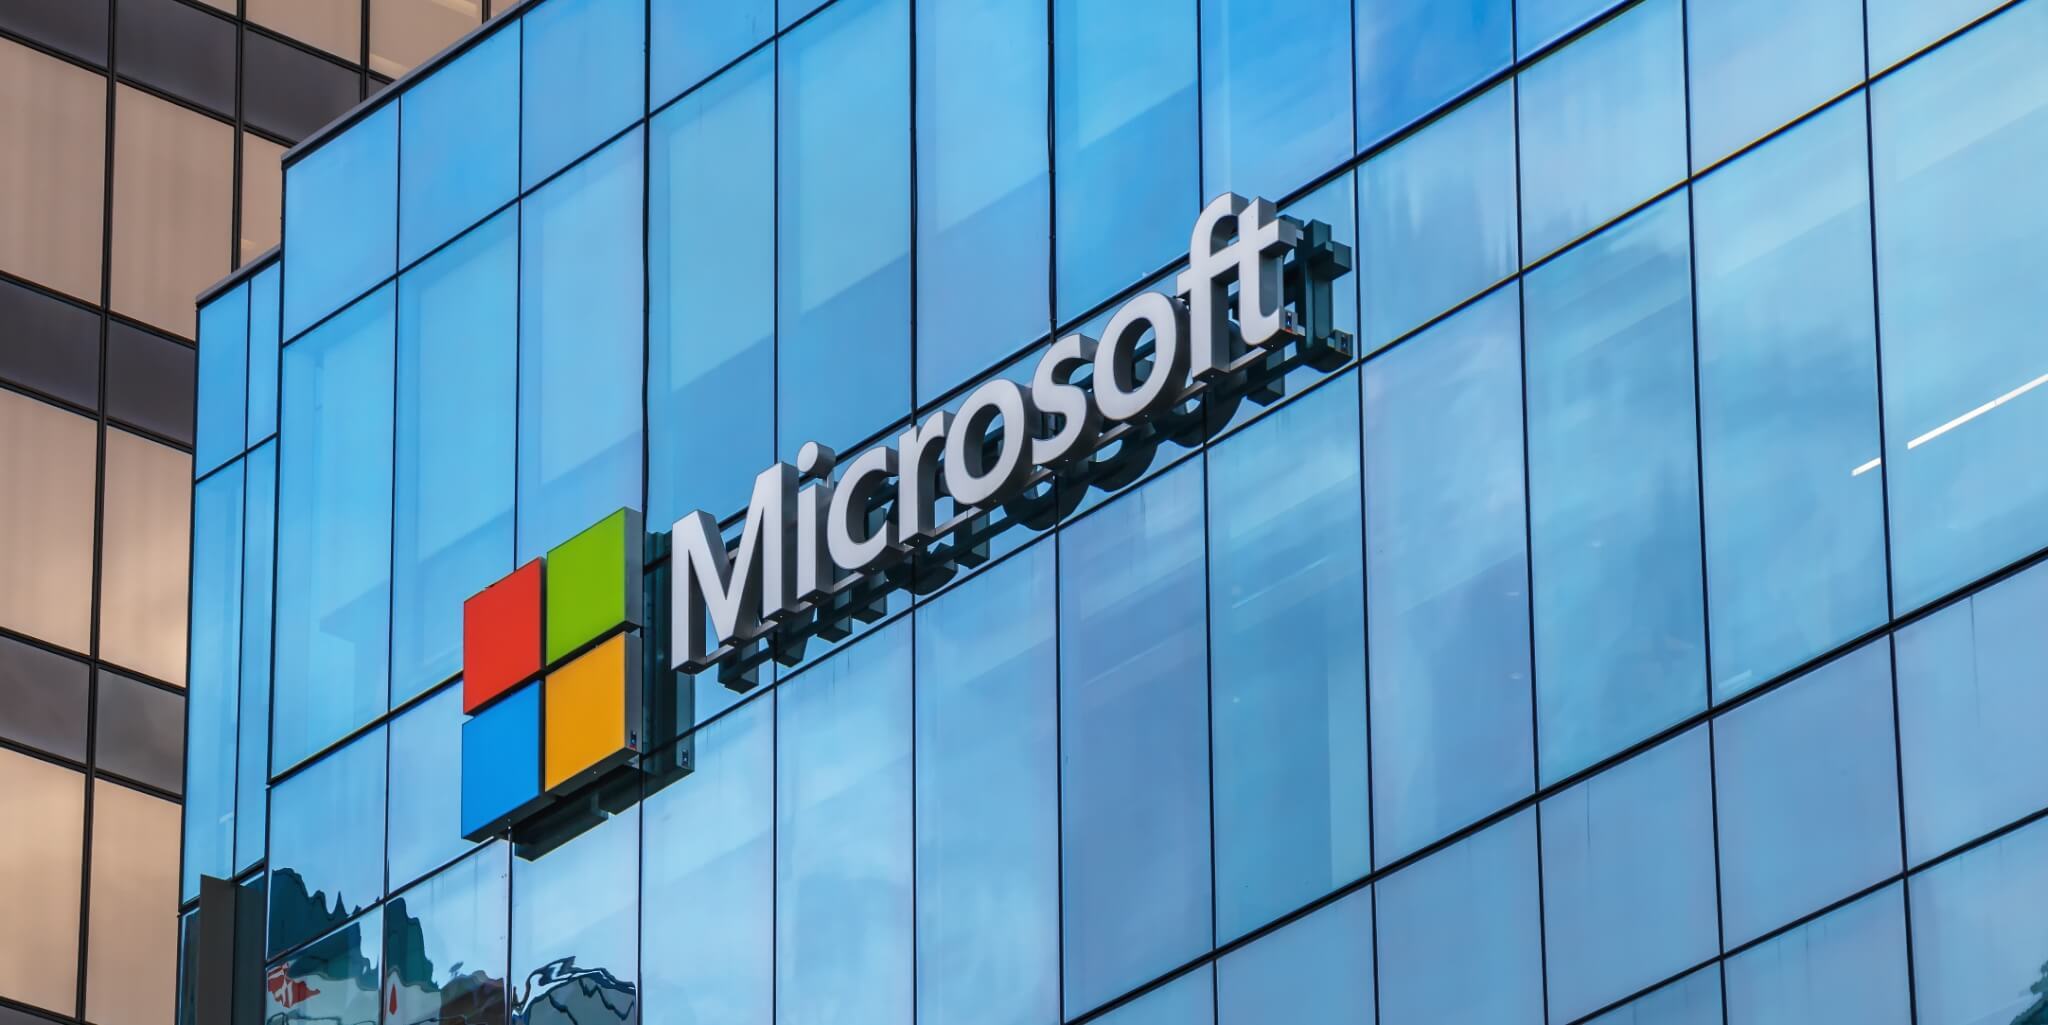 Microsoft зафиксировал рекорд по прибыли и выручке за квартал